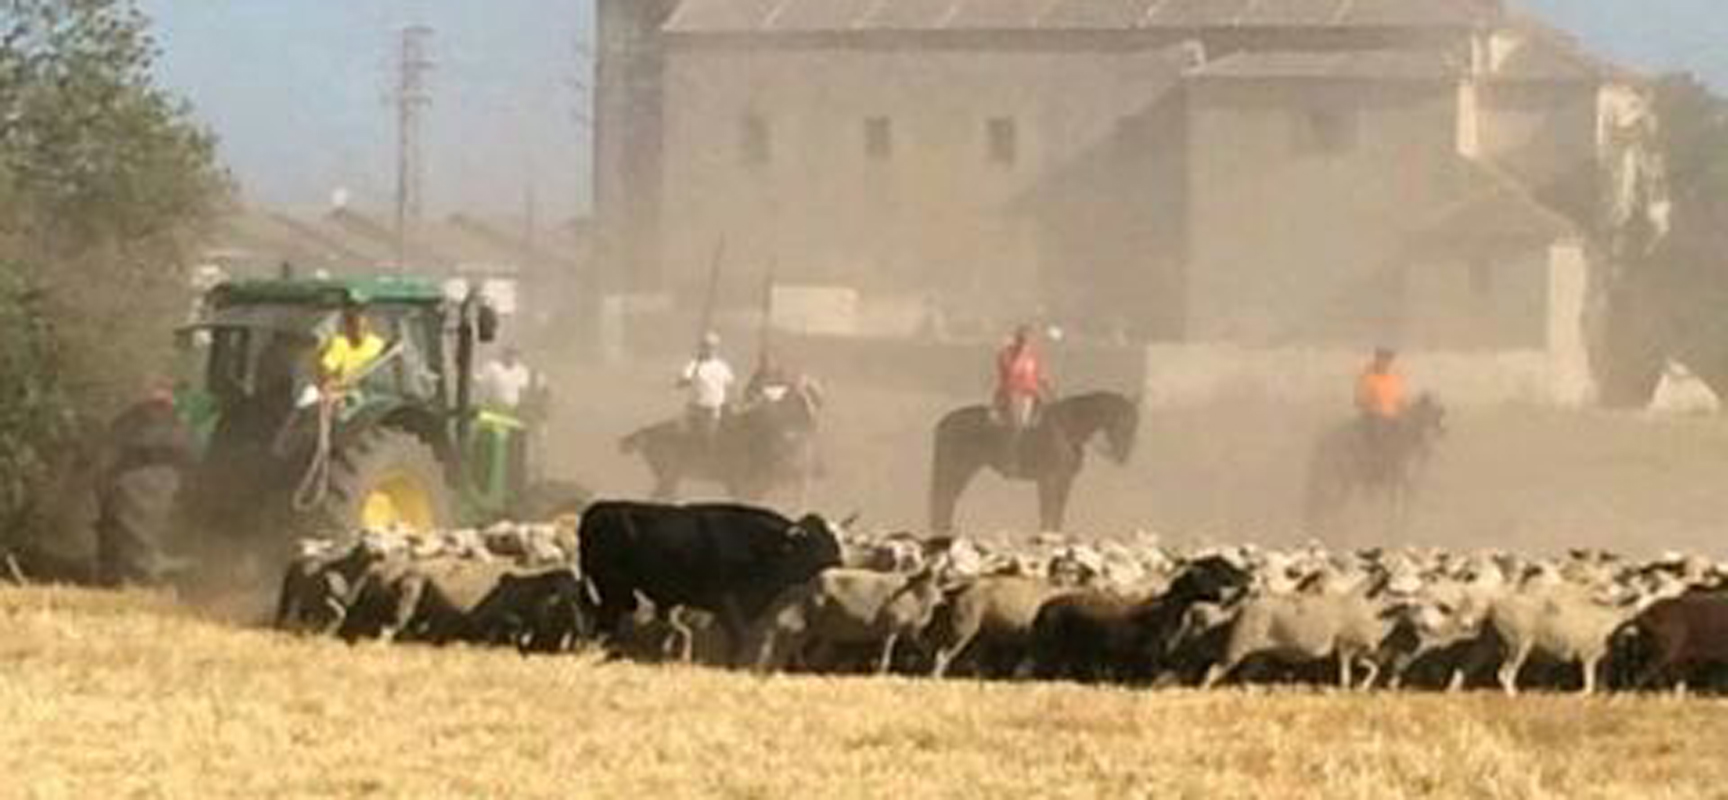 La res instantes antes de entrar en las calles de Zarzuela del Pinar entre un rebaño de ovejas.